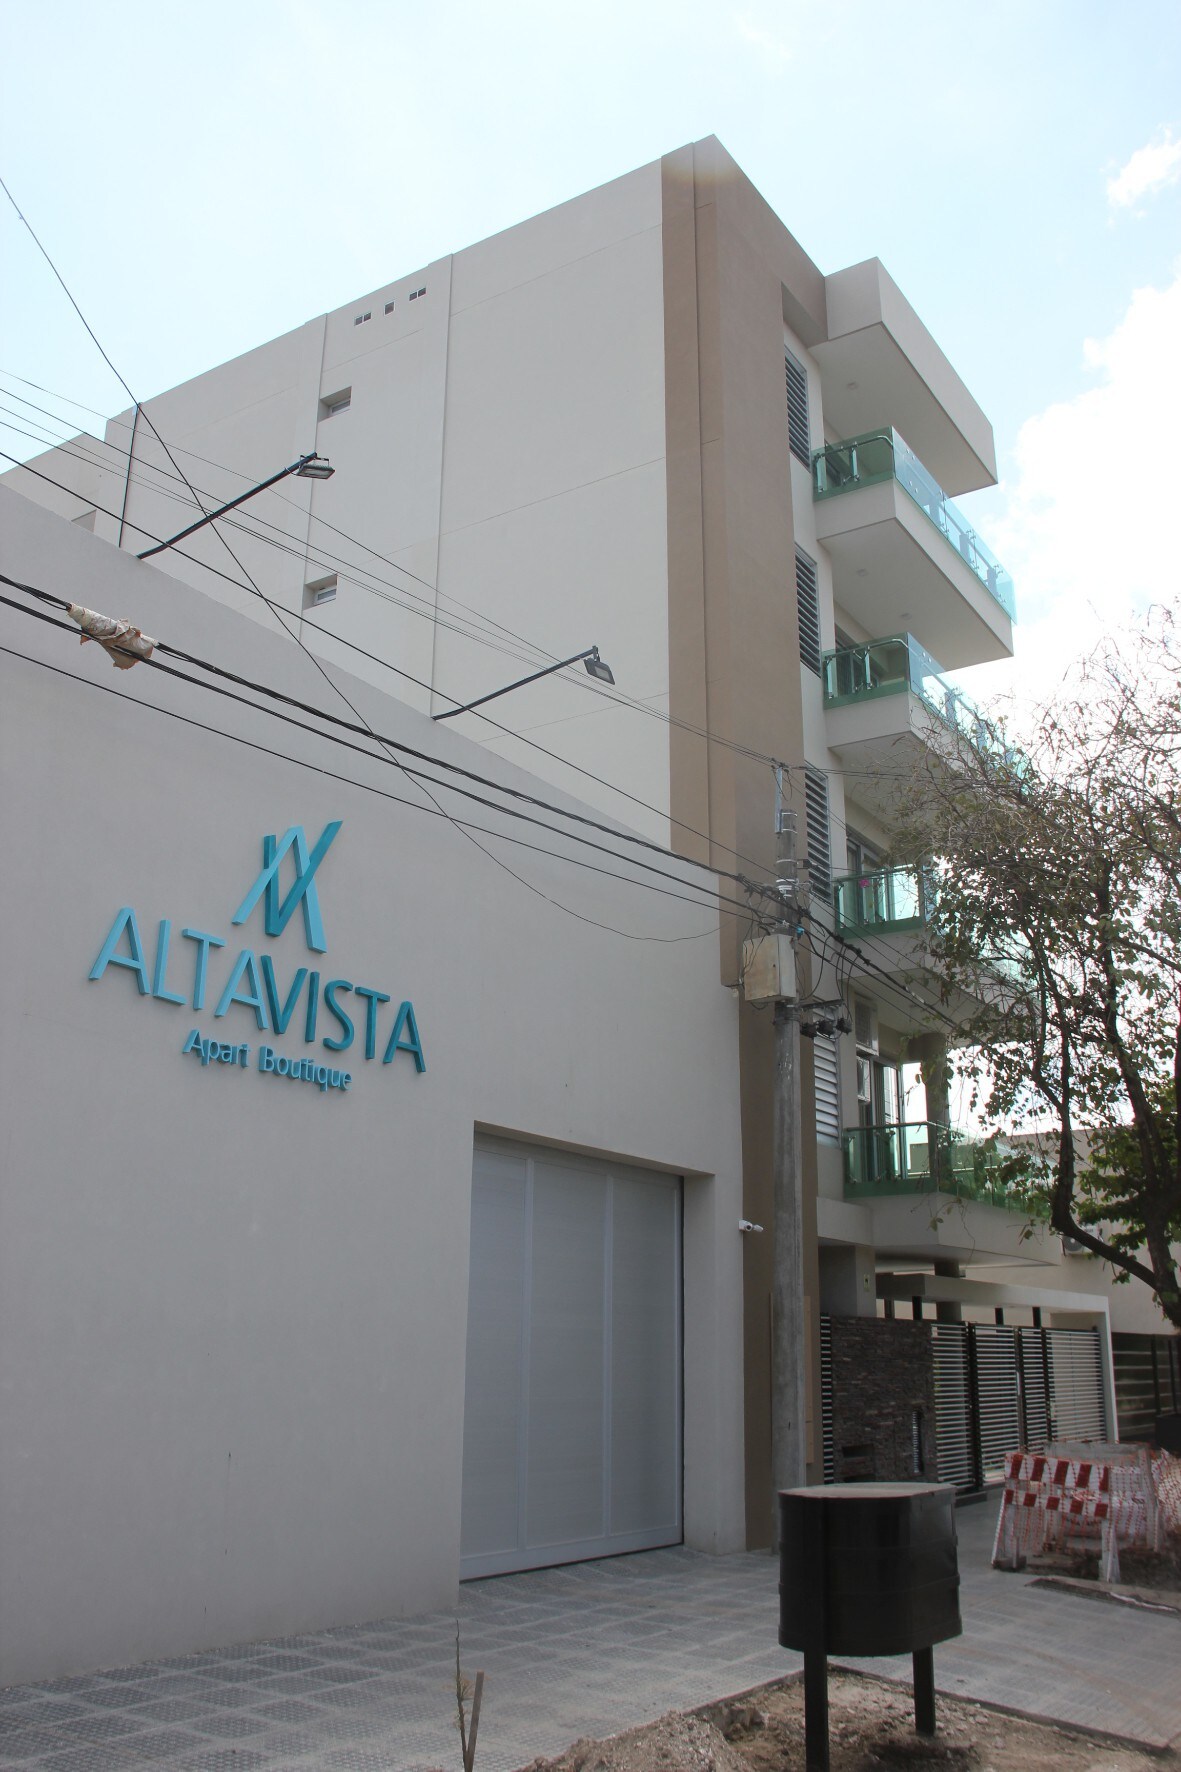 Altavista Apart Boutique